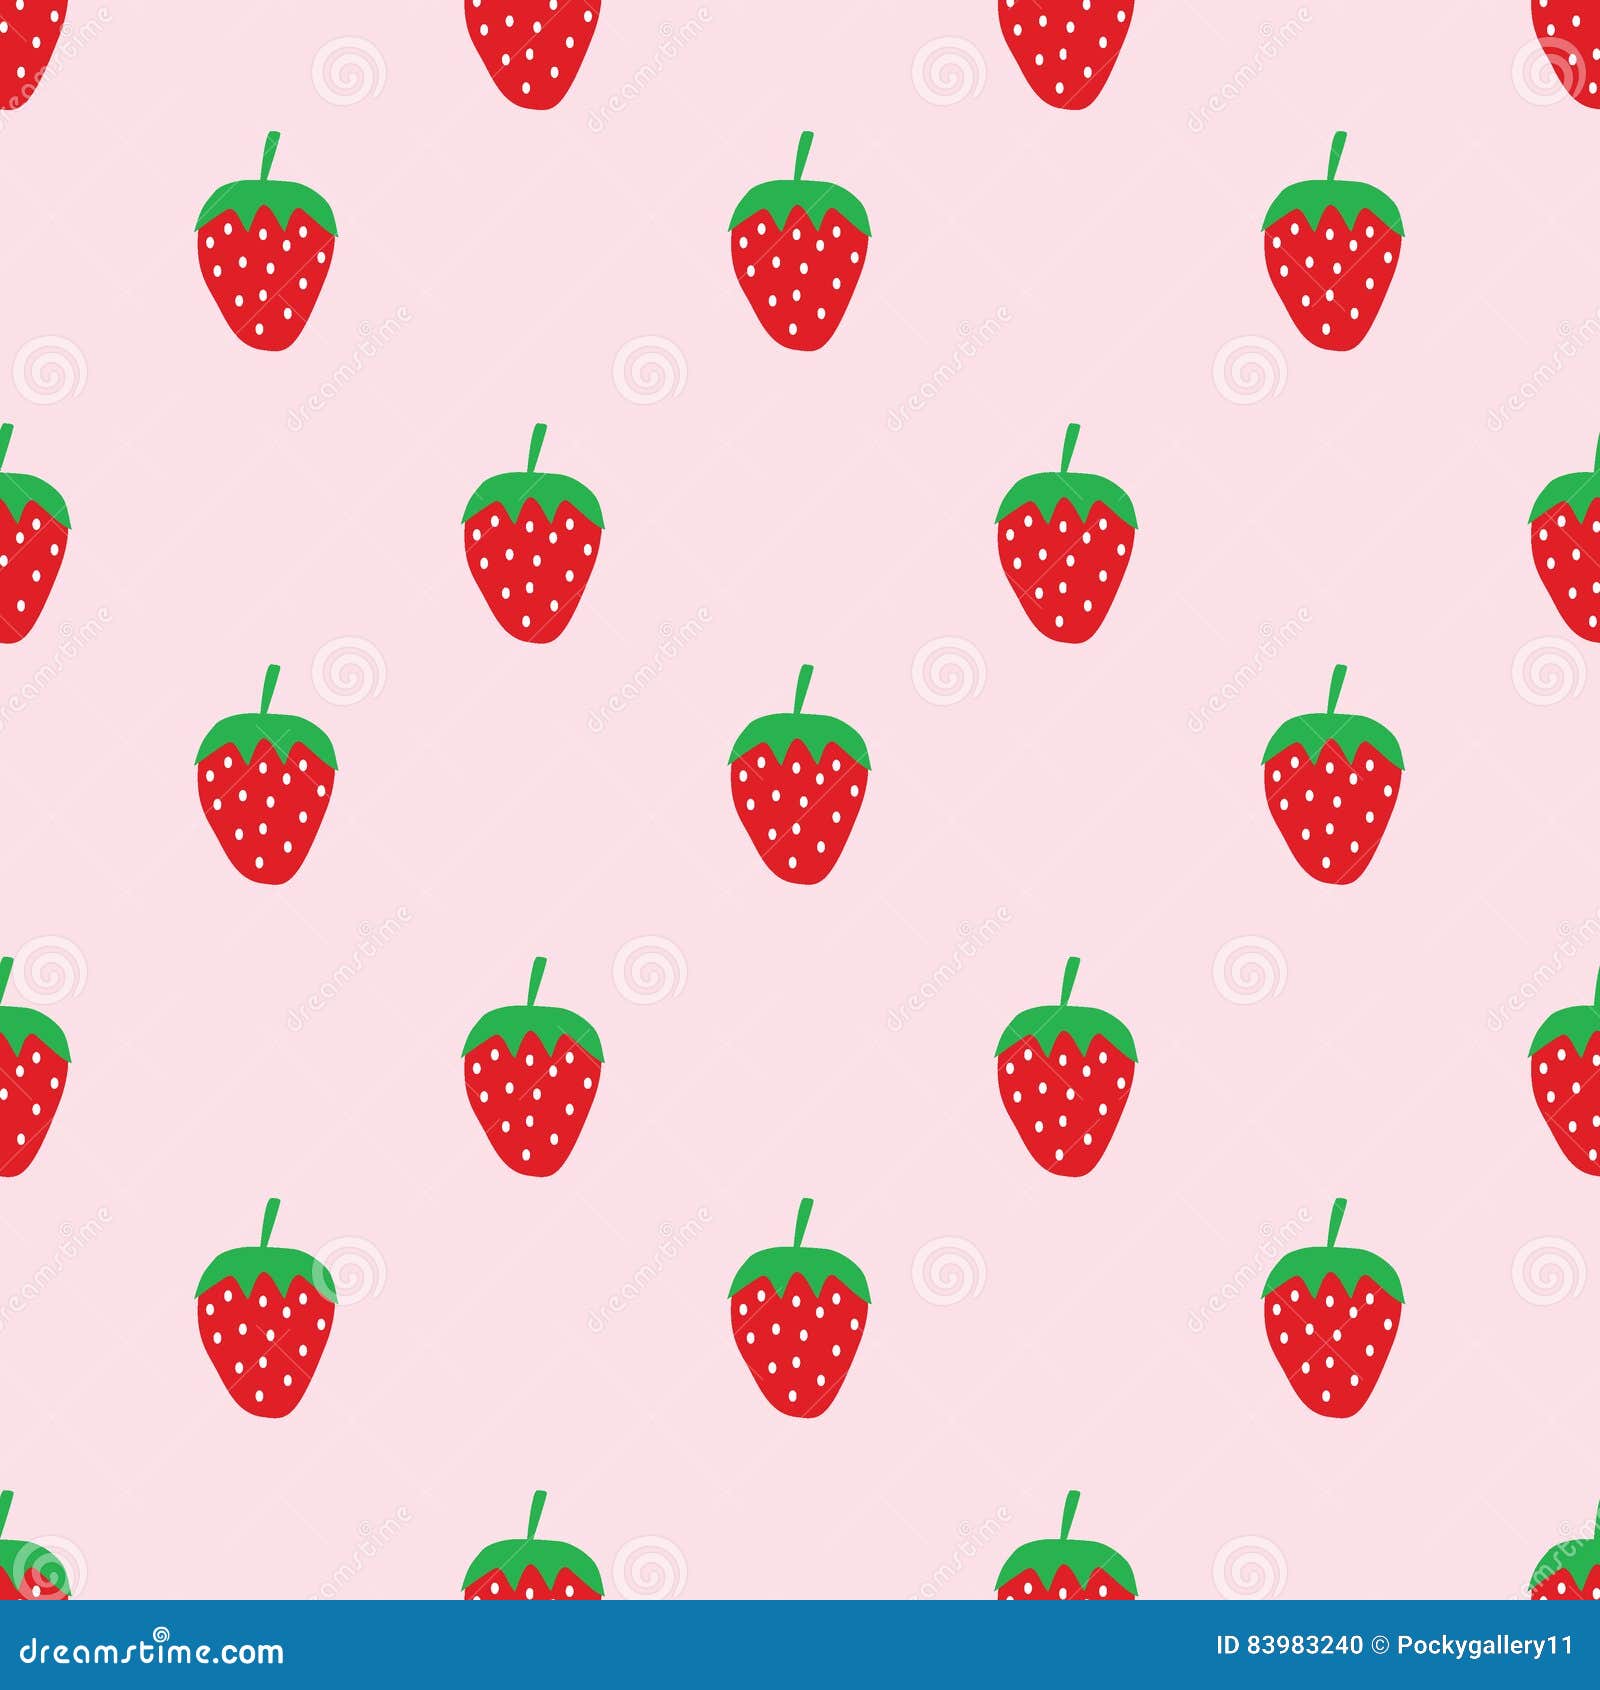 Trang trí mọi thiết bị của bạn với seamless cute strawberry pattern đơn giản nhưng đầy tinh tế này. Mẫu họa tiết này mang đến cho bạn sự tươi mới, vui tươi và nữ tính trong tổng thể thiết kế của bạn.